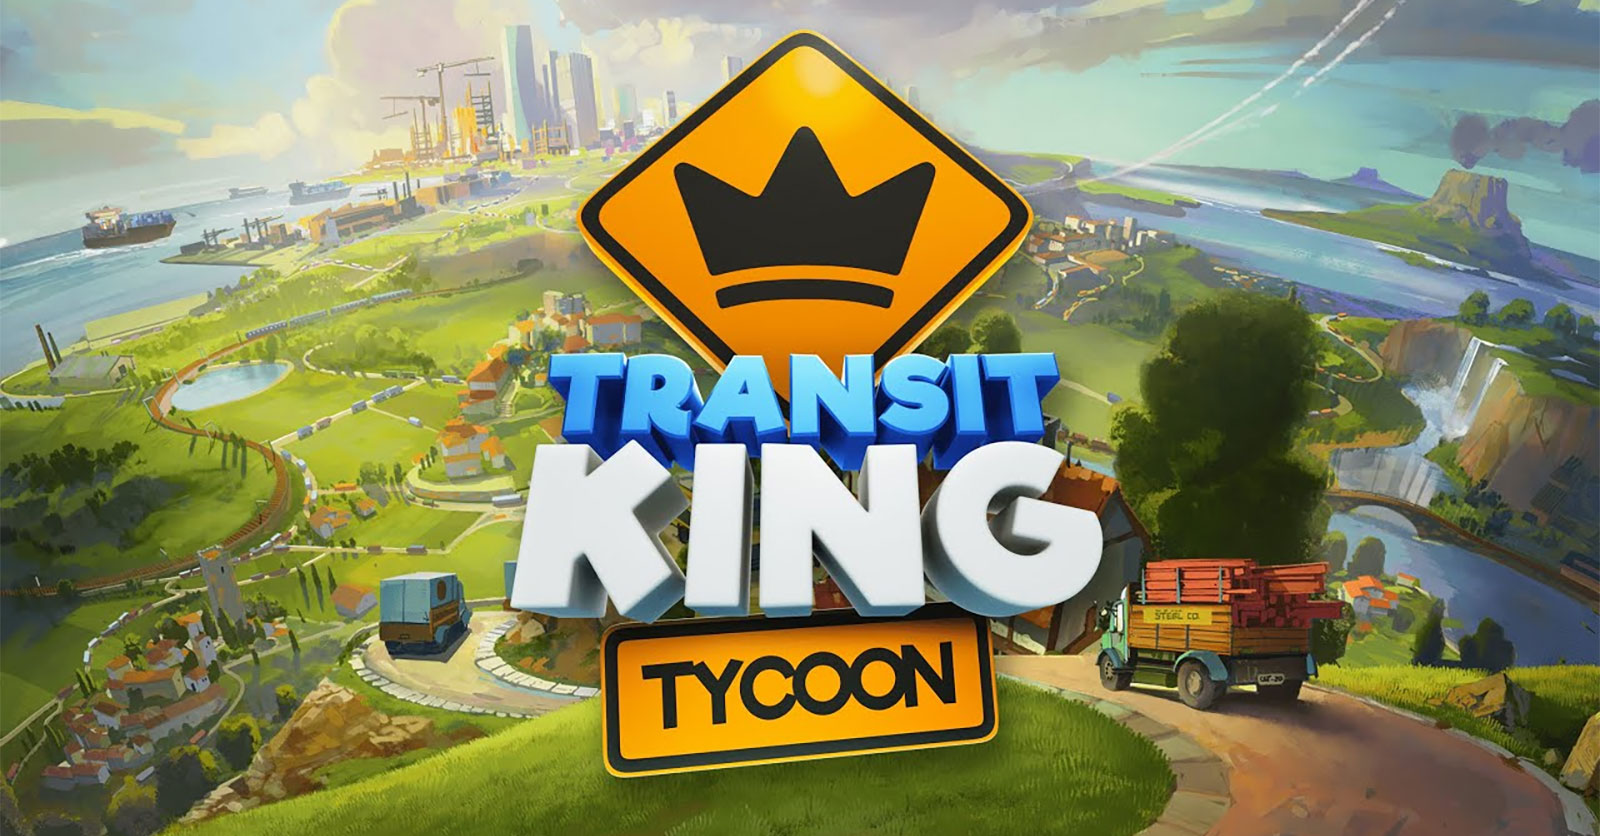 transit king tycoon mod apk